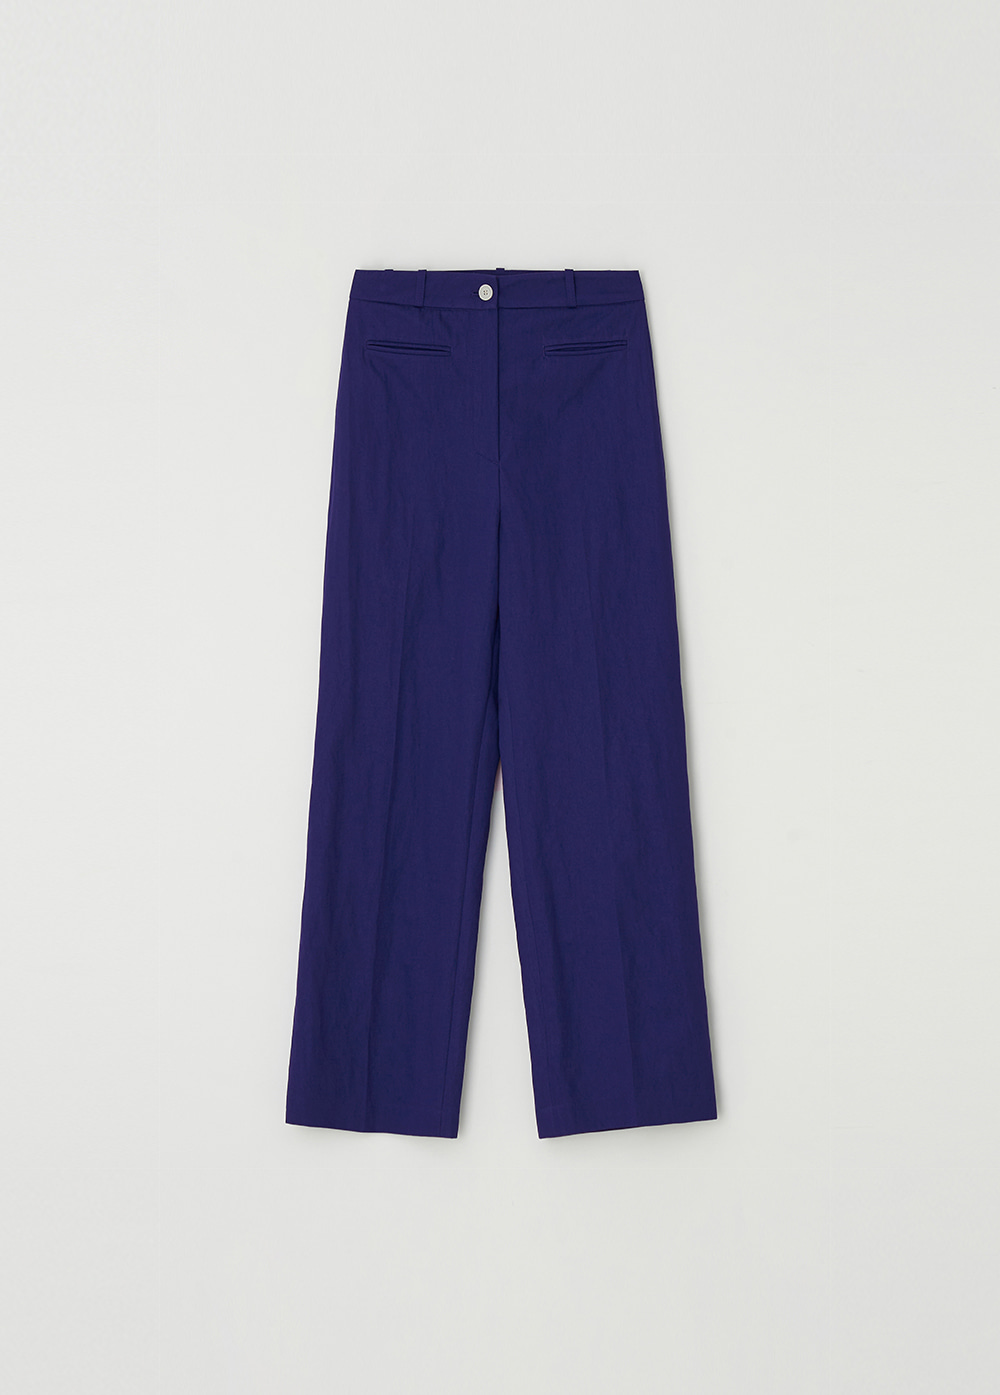 Lip Pocket Pants (Blue Violet)